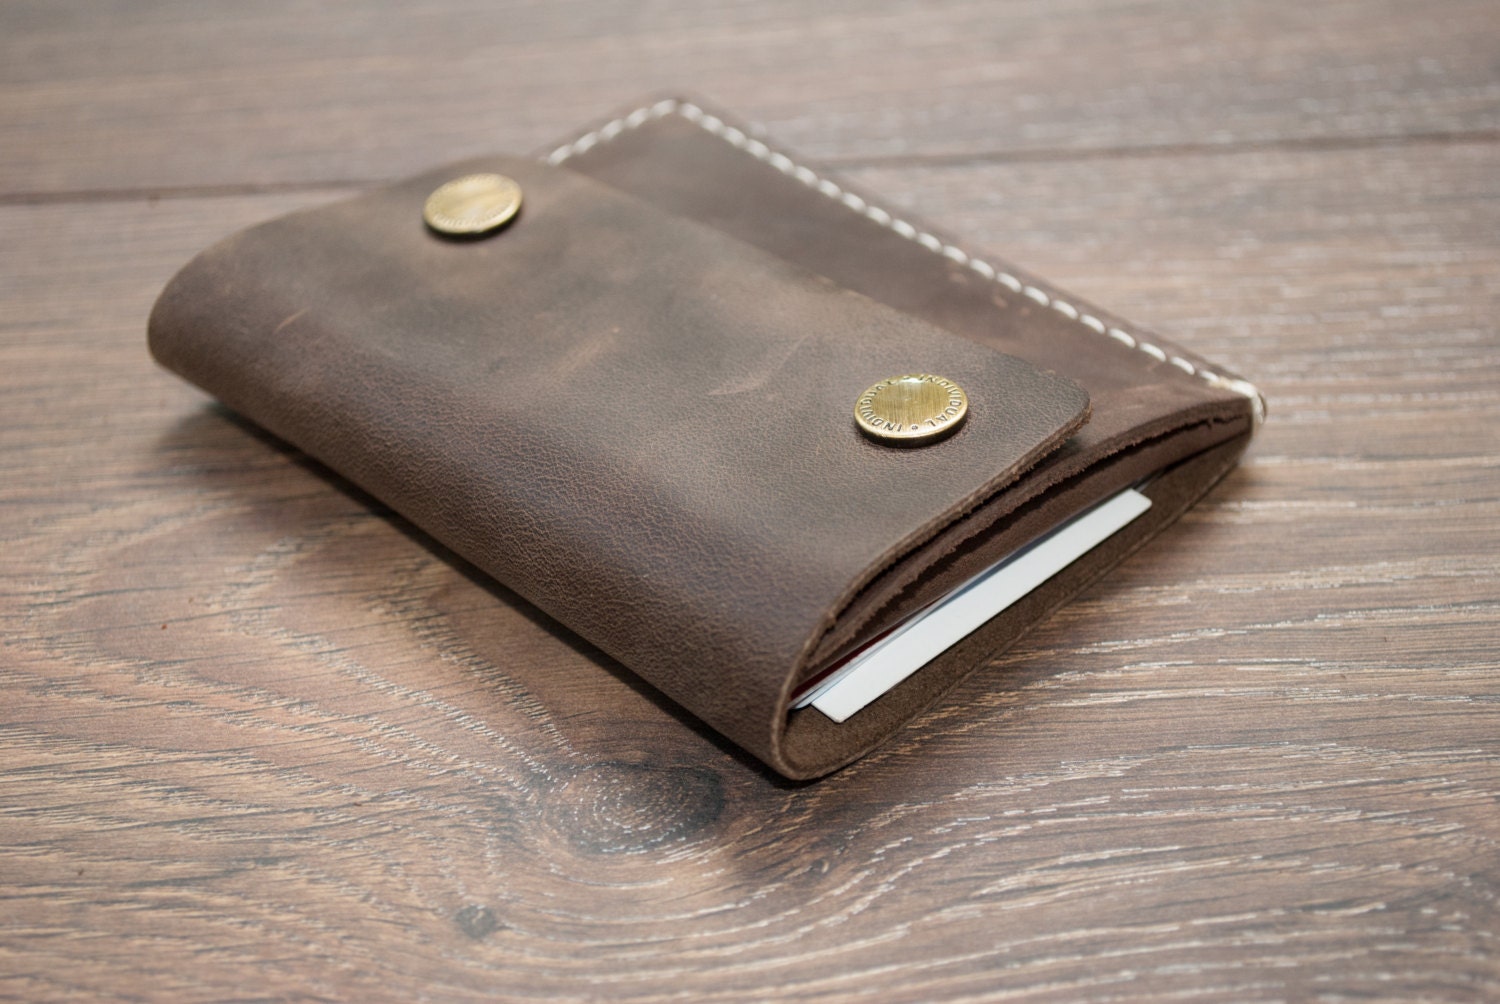 Leather Minimalist Wallet - Men's Wallet - Card Holder - Coin Wallet - Women's Wallet - Original Leather wallet - Personalized Wallet